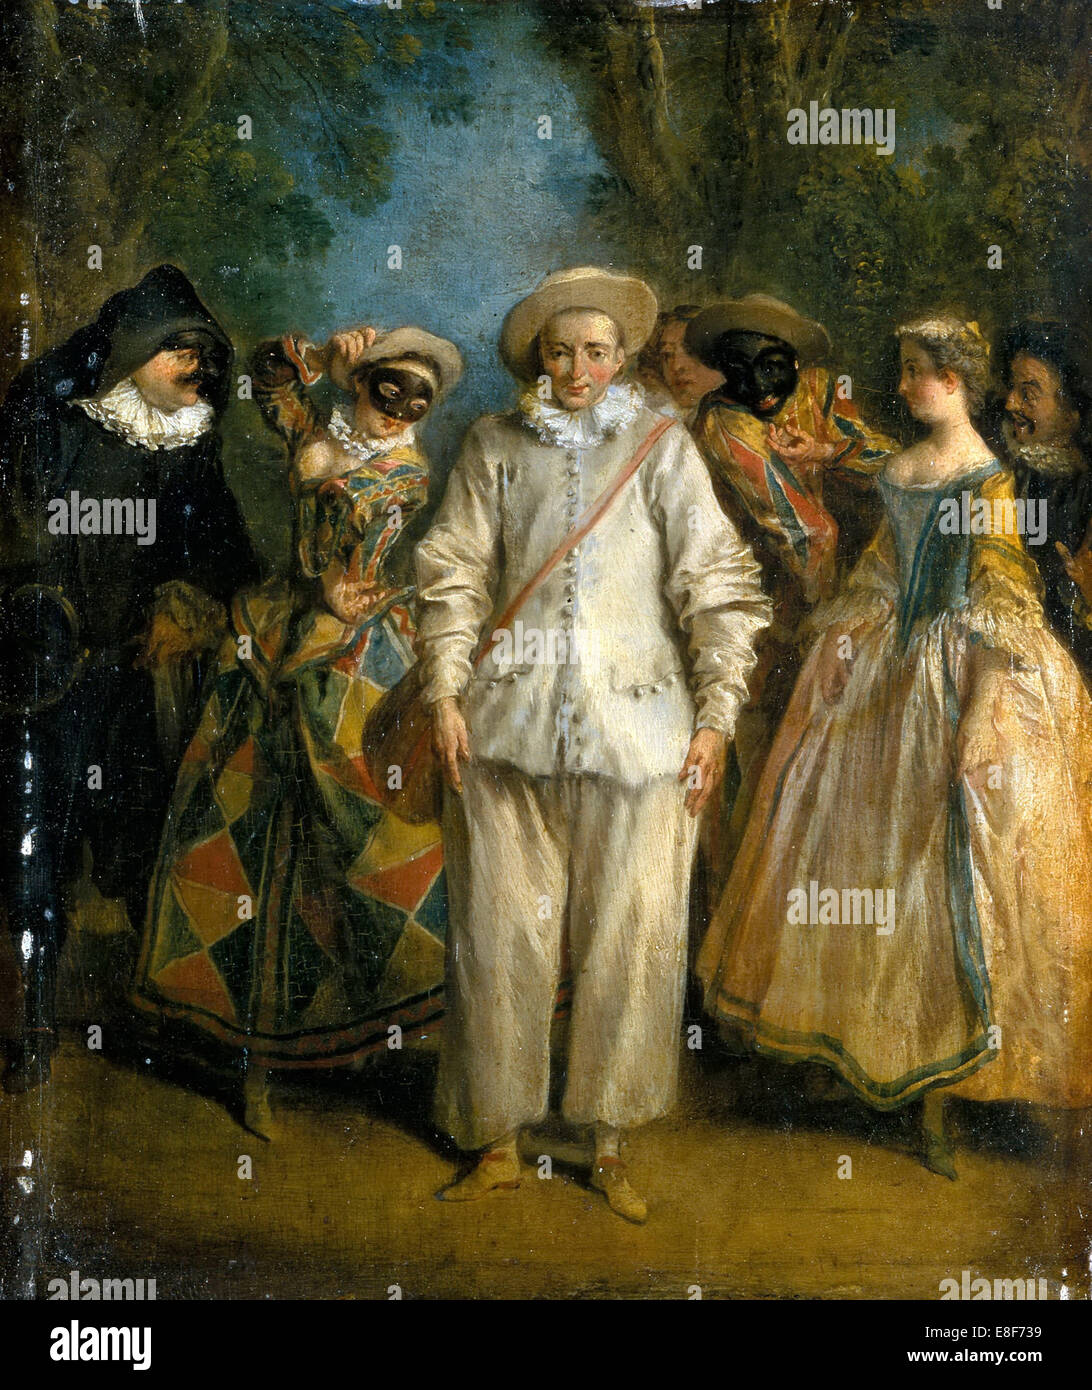 Les acteurs de la Commedia dell'Arte. Artiste : Lancret, Nicolas (1690-1743) Banque D'Images